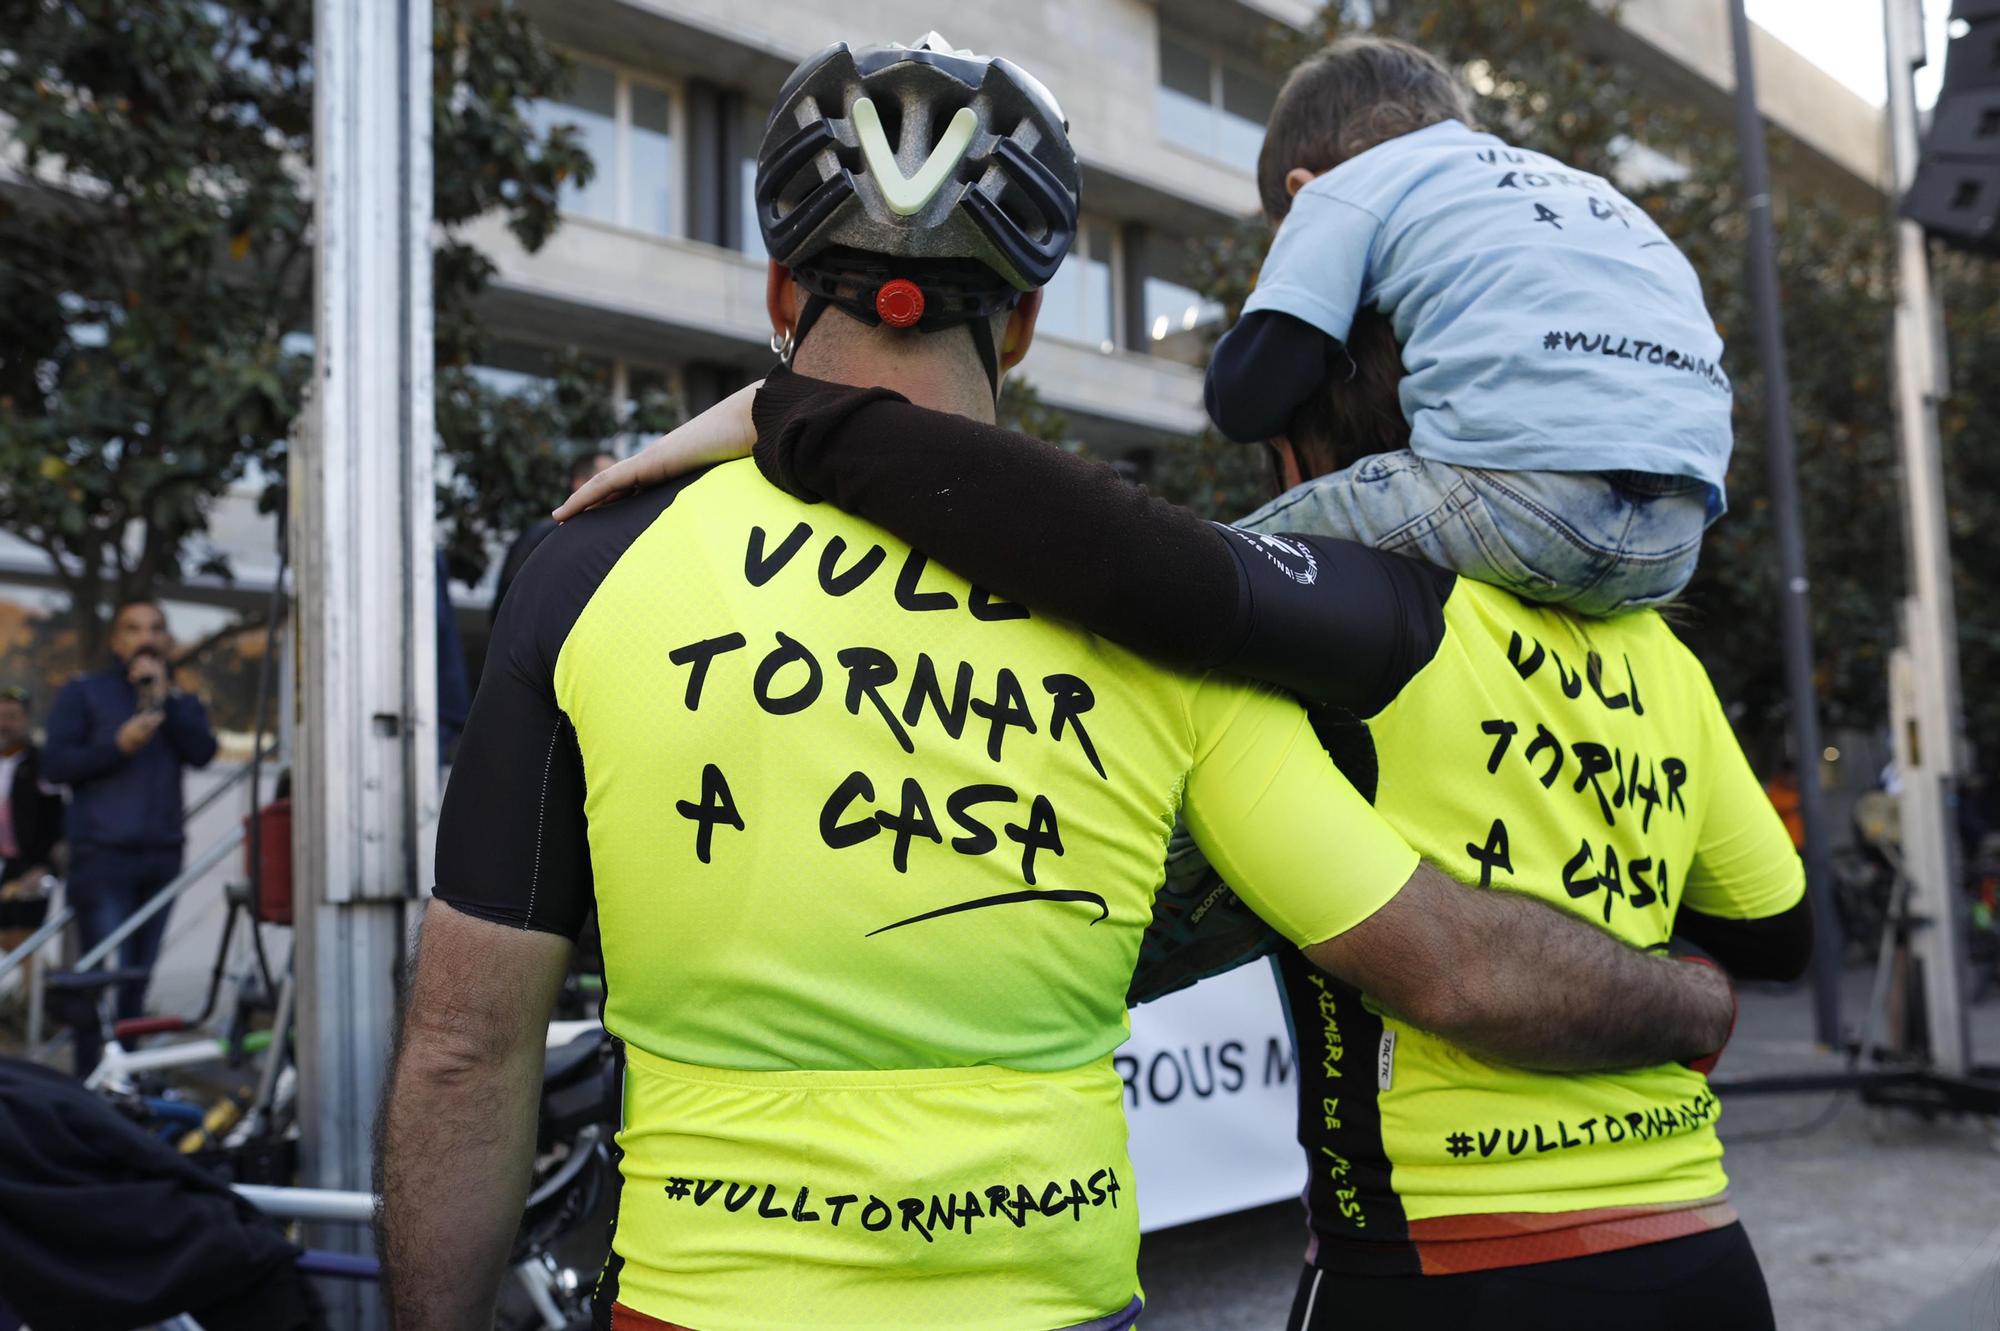 Un miler de persones diuen adeu a la ciclista de Girona atropellada mortalment per un conductor begut